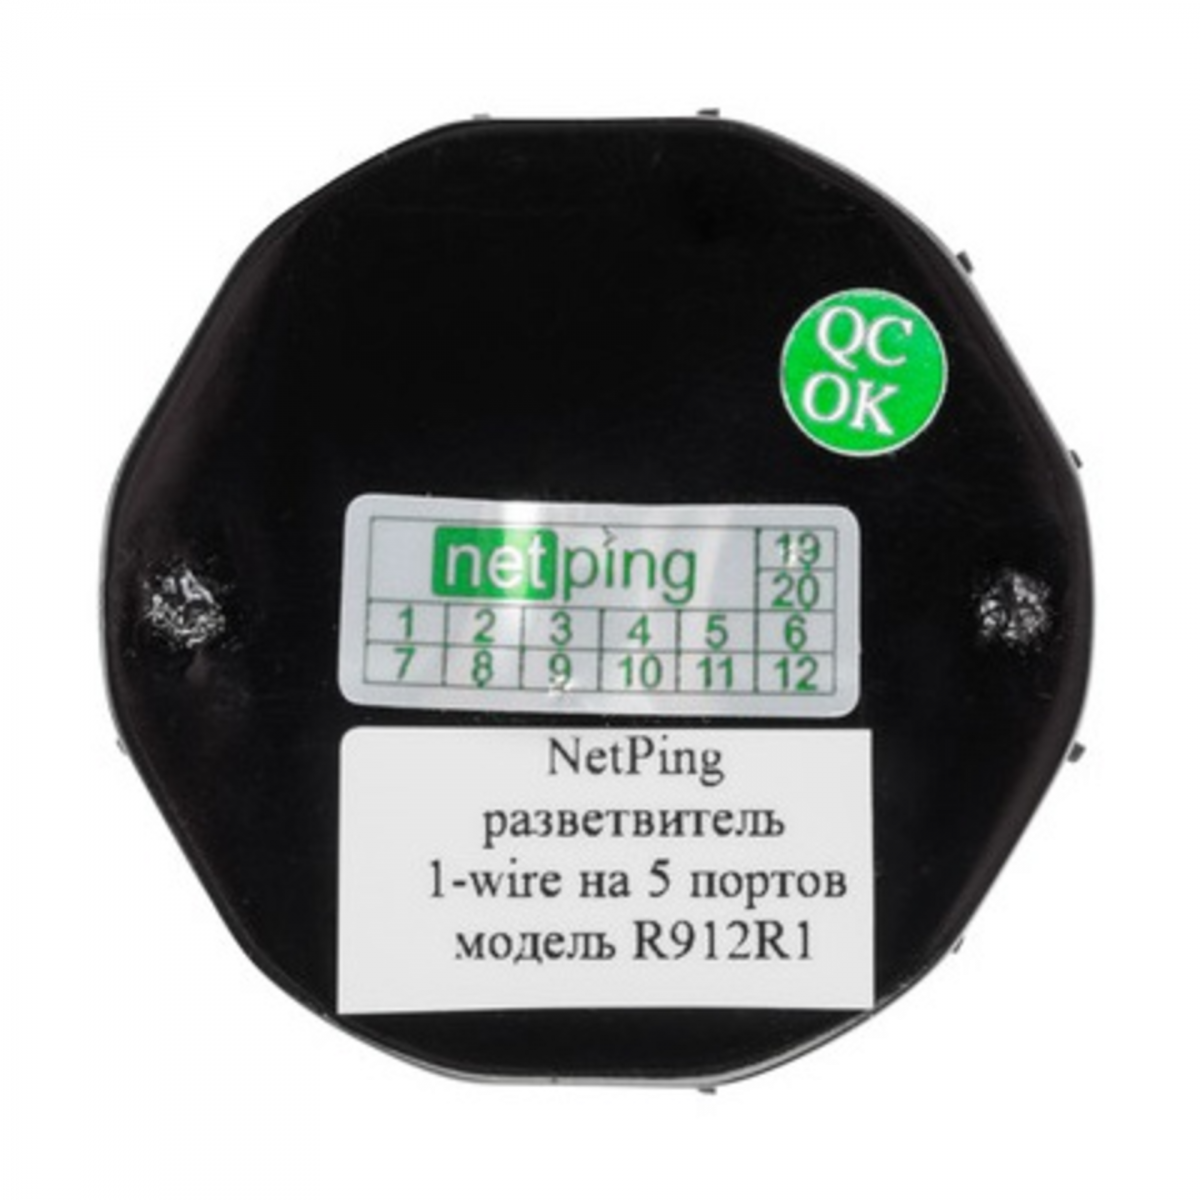 NetPing удлинитель-разветвитель 1-wire на 5 портов, модель R912R1